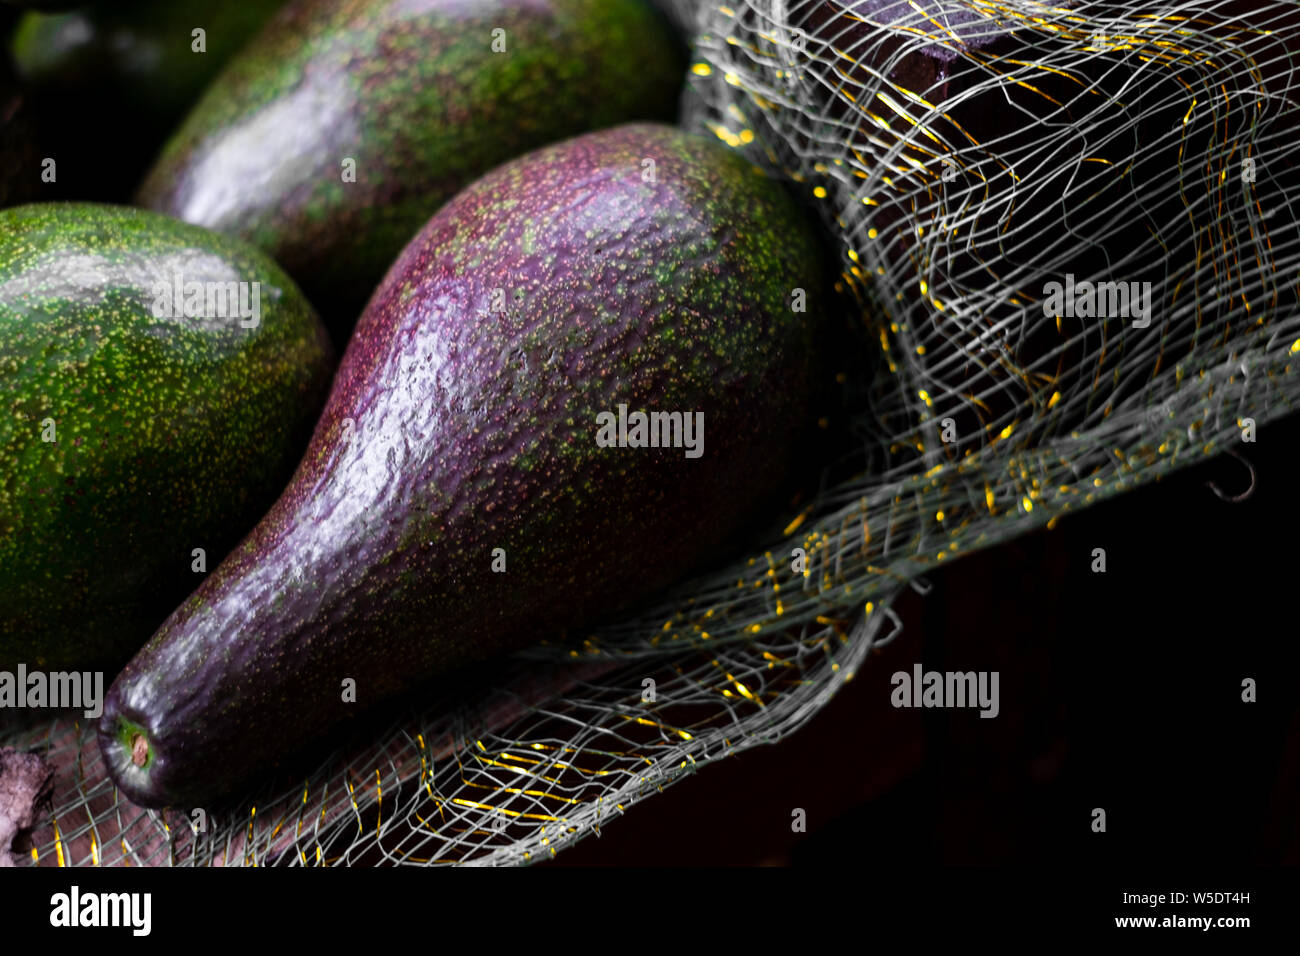 Frisch gepflückte Organische avocado Obst (AKA butter Obst oder Alligator Pear) auf Netz Tuch. Er enthält erhebliche Menge an gesunden Fettsäuren. Stockfoto